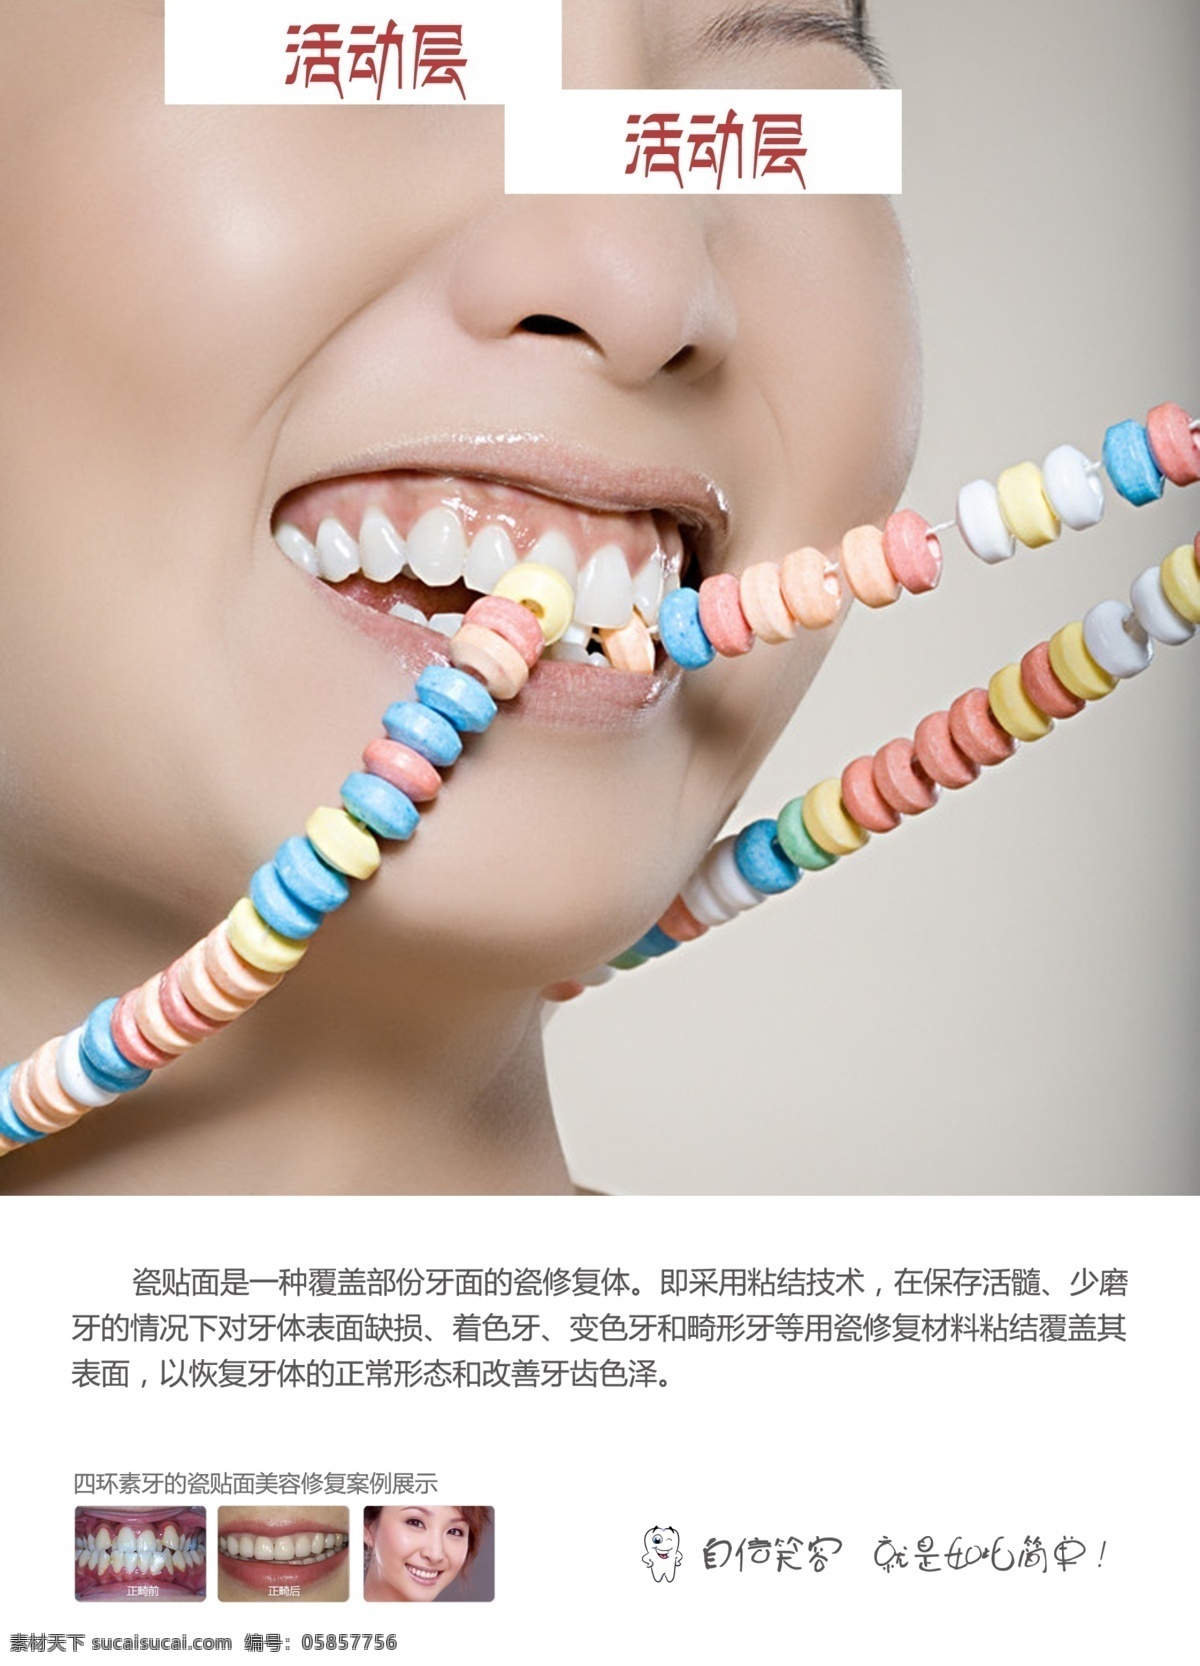 口腔科 口腔正畸 牙齿畸形 口腔美白 洁牙 美牙 牙科 牙齿 喷绘海报 其他模版 广告设计模板 源文件